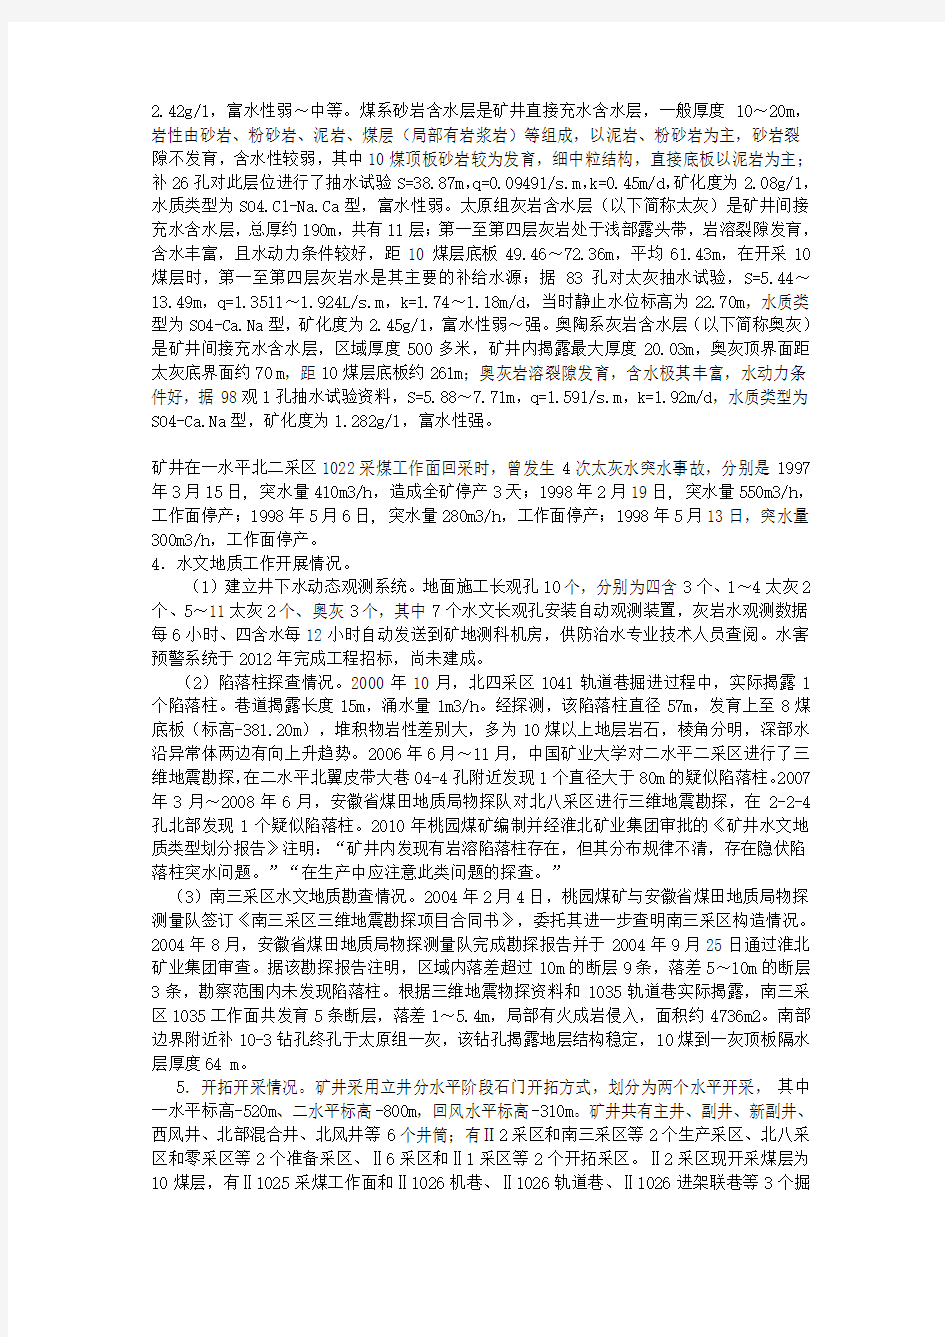 淮北矿业(集团)有限责任公司桃园煤矿“2.3”突水事故调查报告